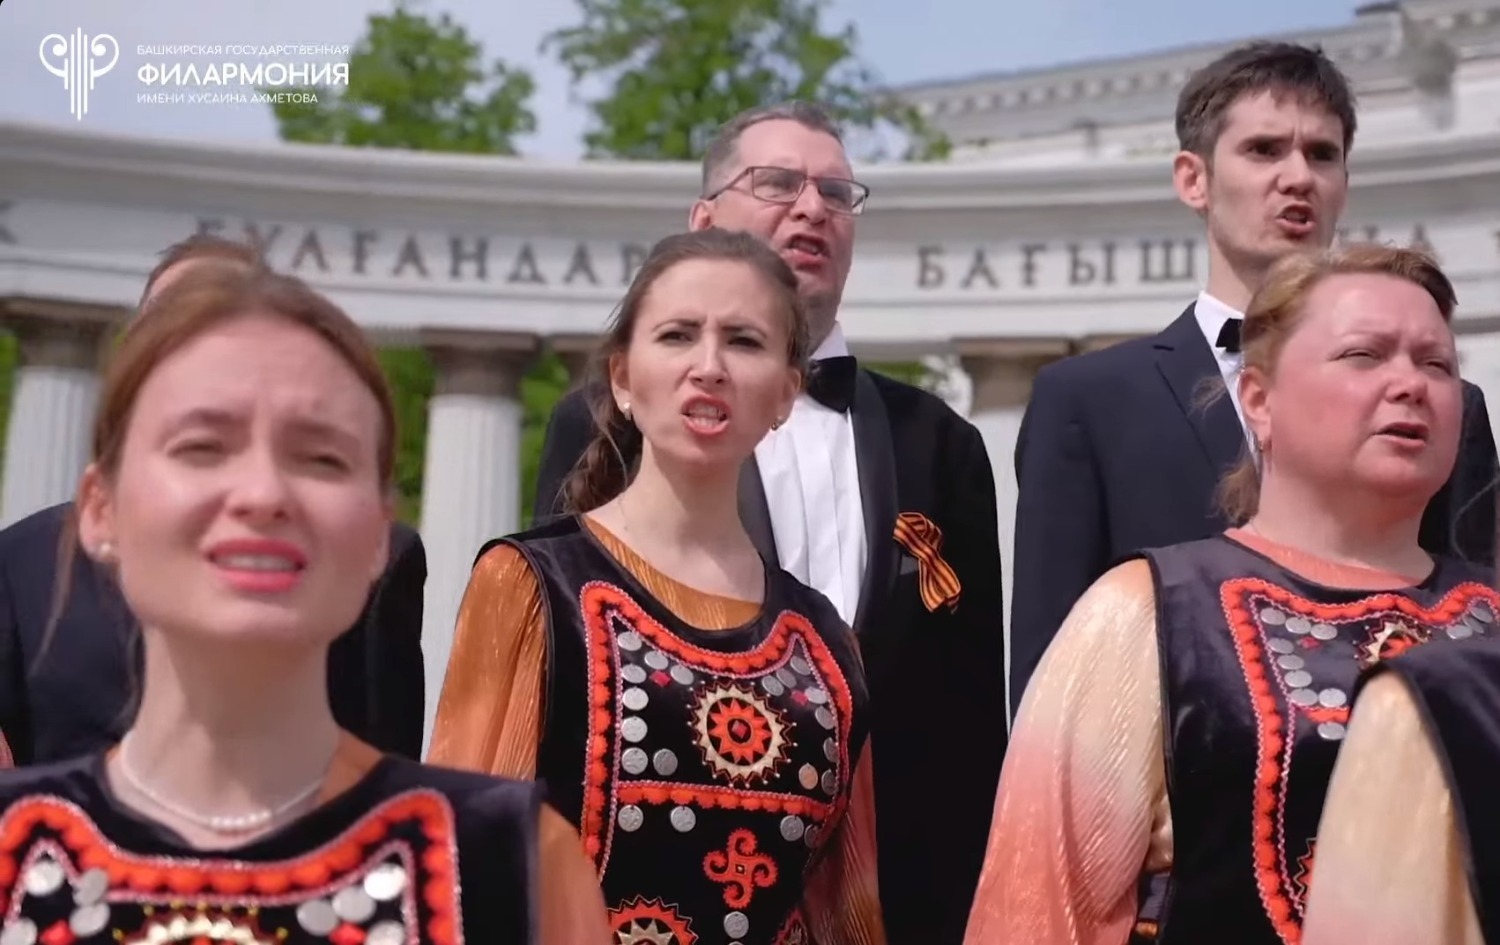 В Башкирии музыканты и певцы исполнили  для всей республики песню  «Шаймуратов генерал» в честь предстоящего Дня Победы